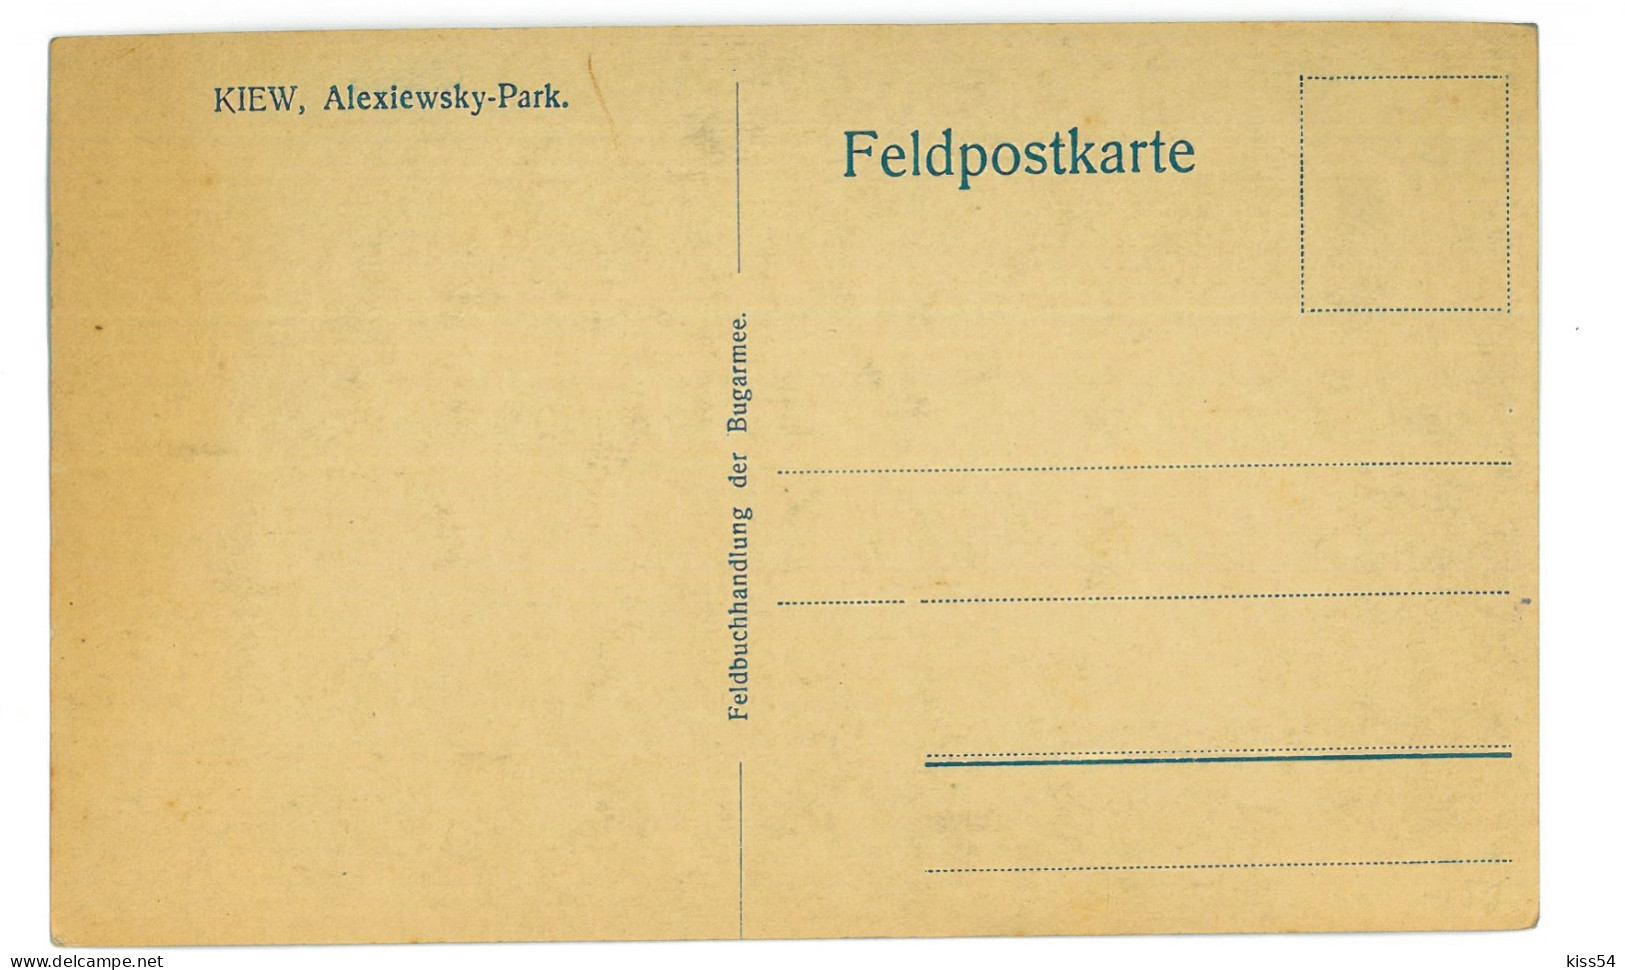 UK 29 - 24343 KIEV, Alexiewsky Park, Ukraine - Old Postcard - Unused - Ucraina